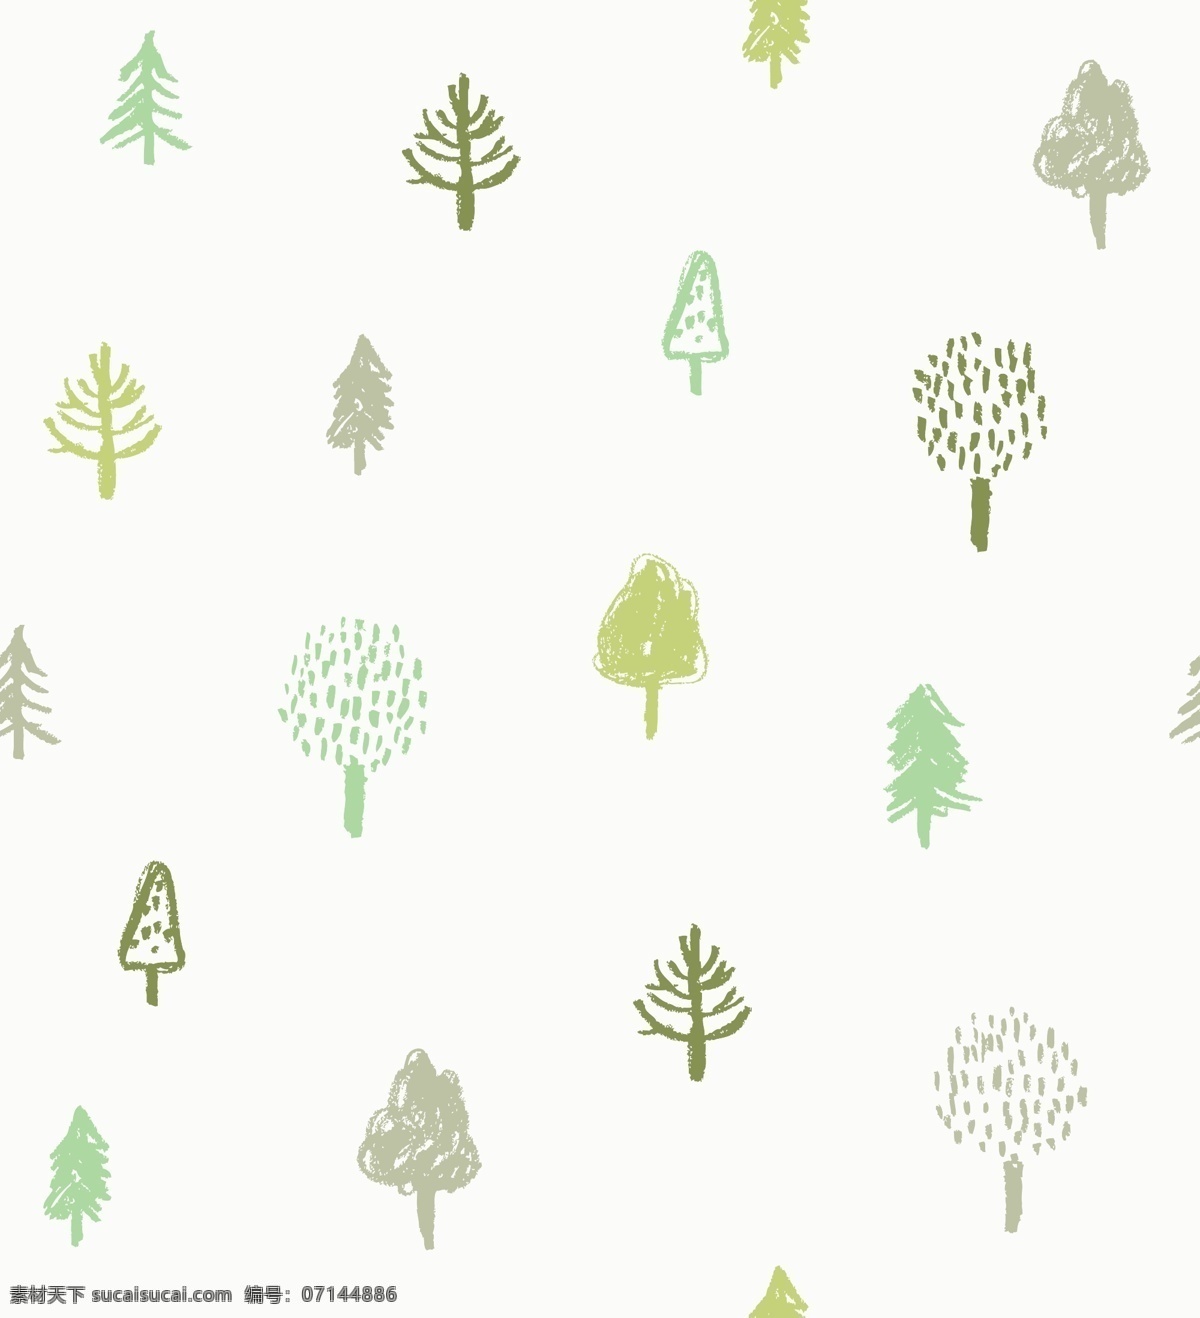 树木 植物 四方连续图 矢量树木 树 线条树木 线条植物 创意树木 分层 背景素材